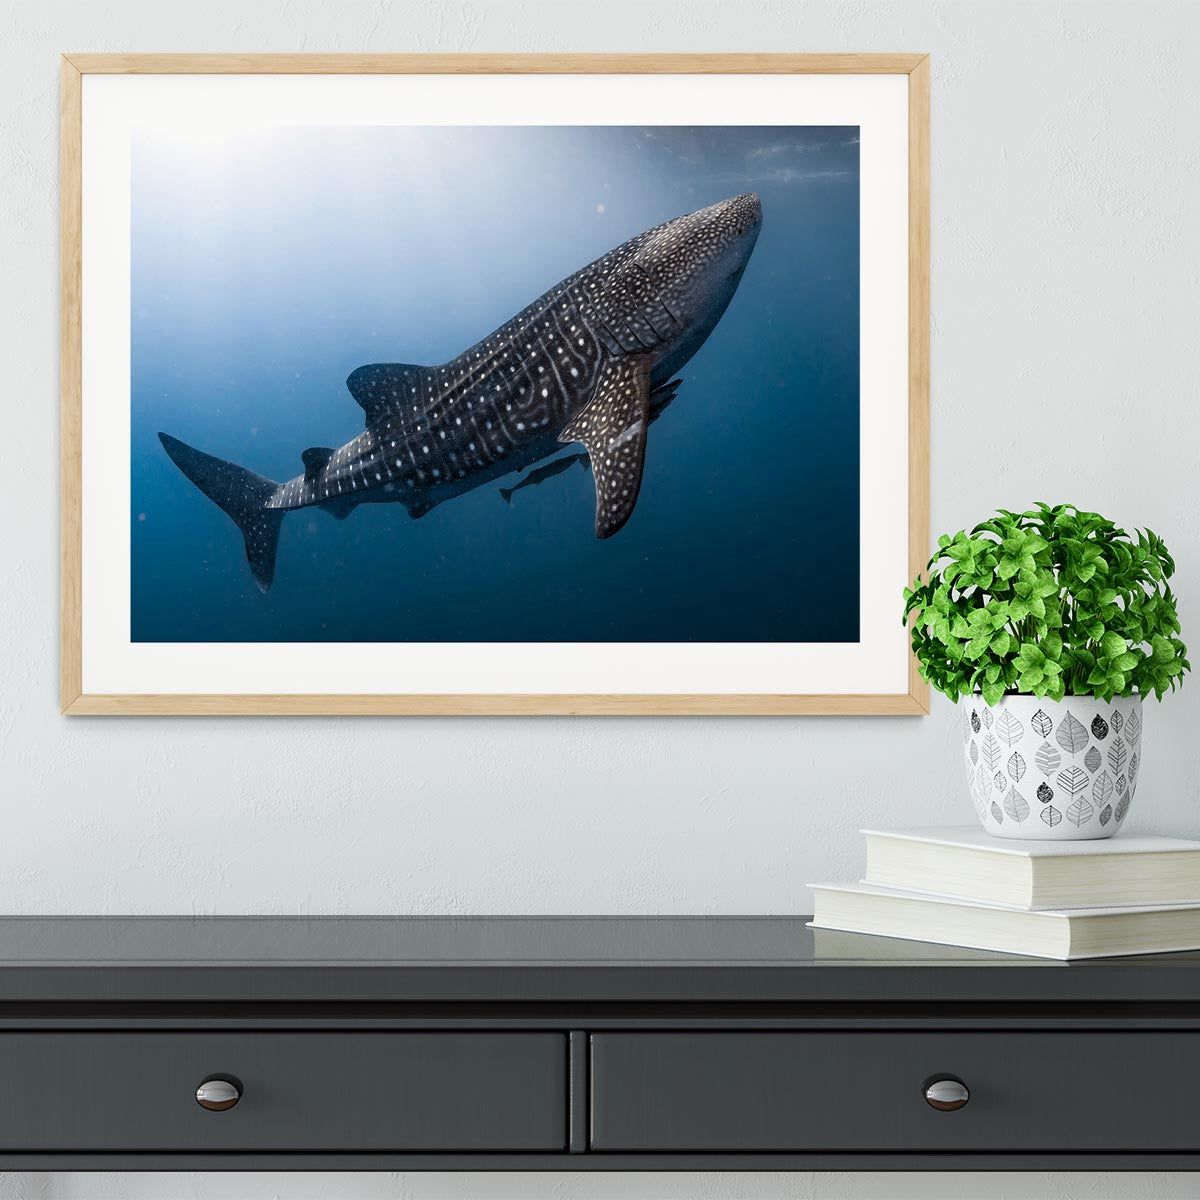 Whale Shark very near Framed Print - Canvas Art Rocks - 3